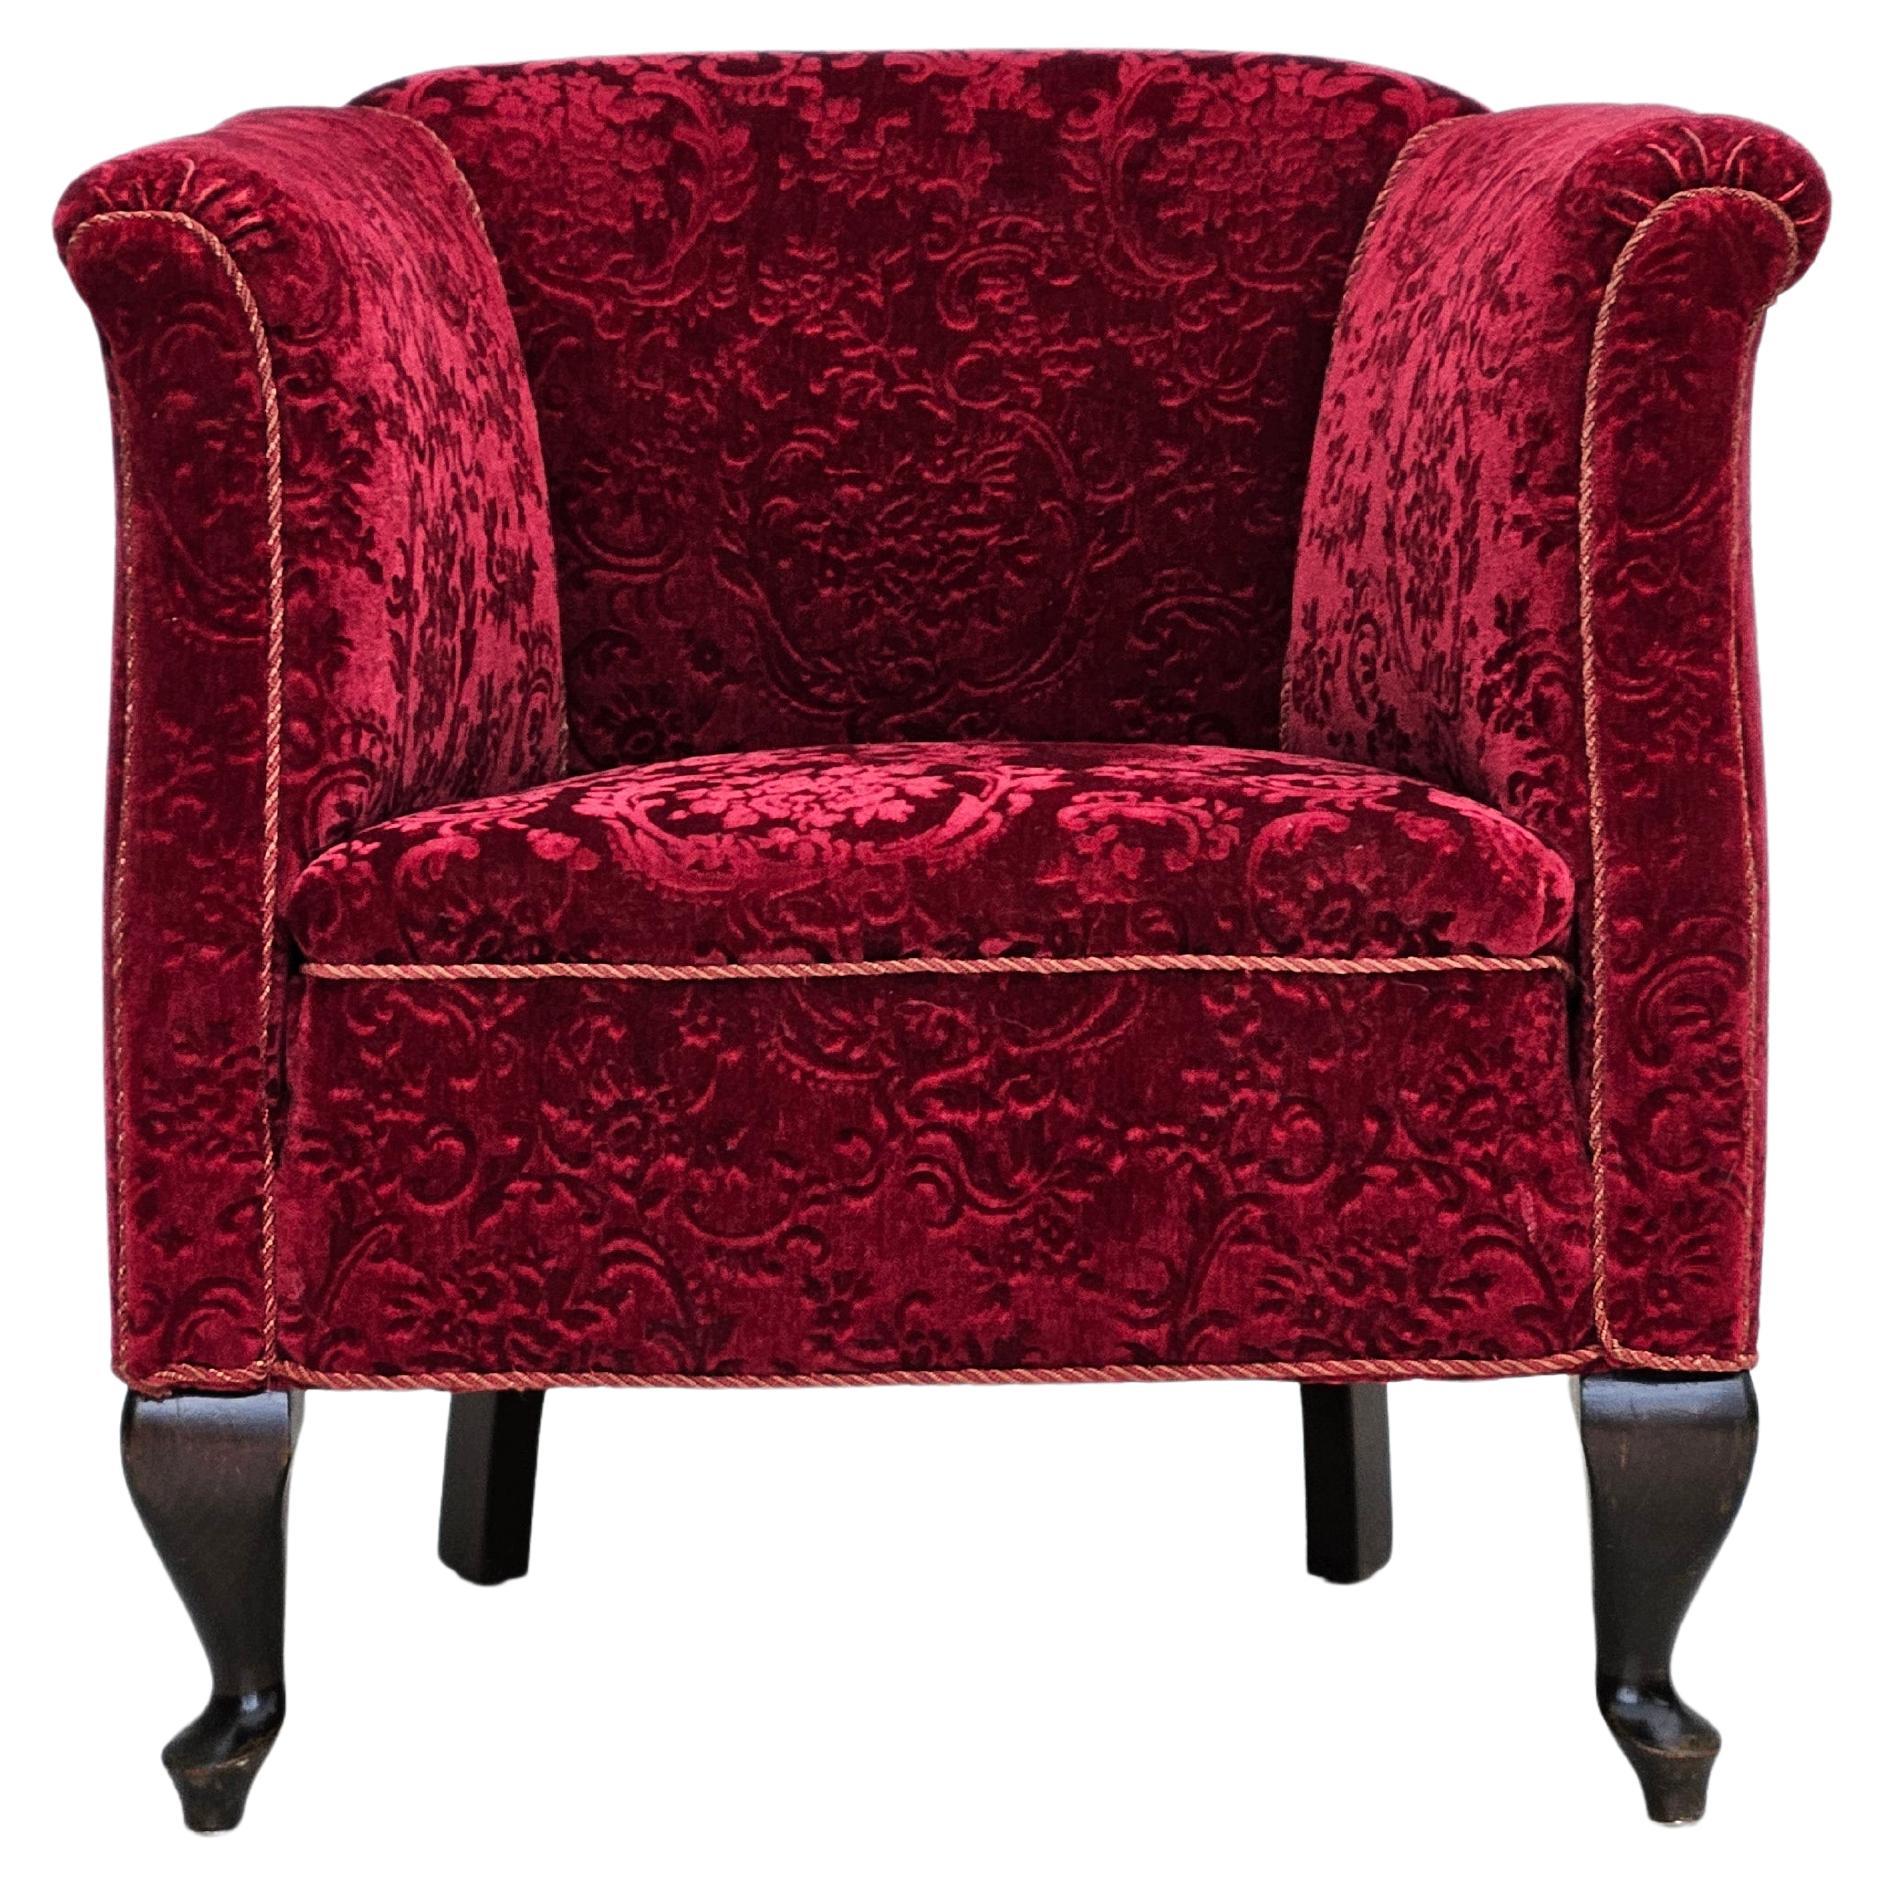 Chaise vintage danoise des années 1950, tissu coton/laine rouge, bois de hêtre.